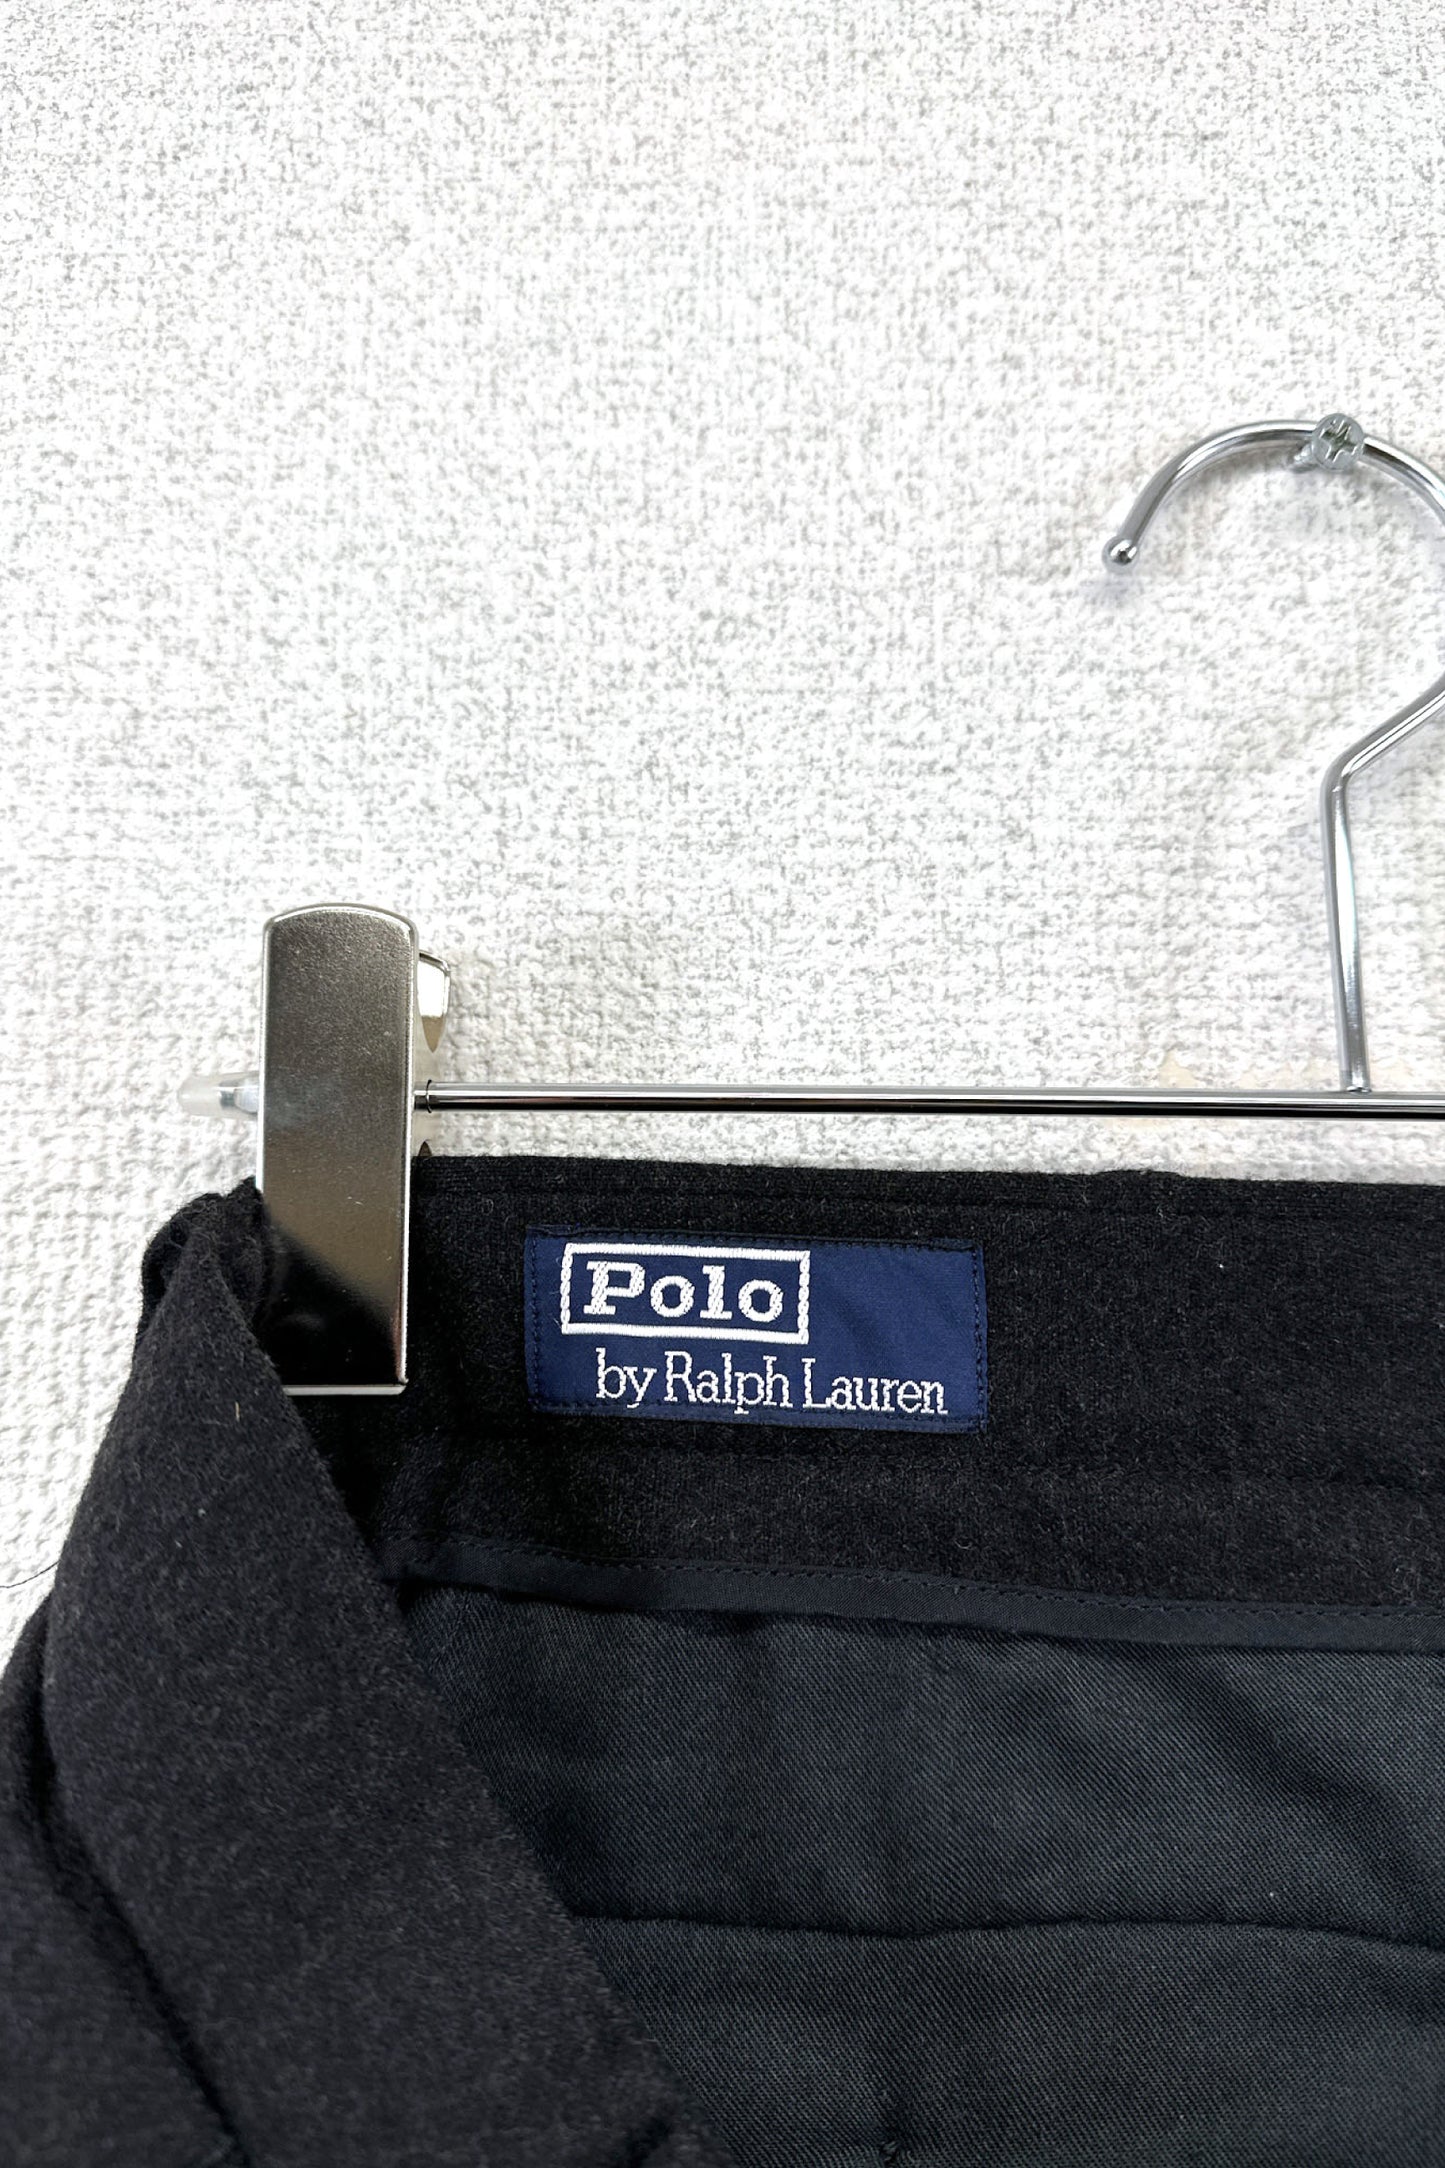 90's Polo by Ralph Lauren black slacks